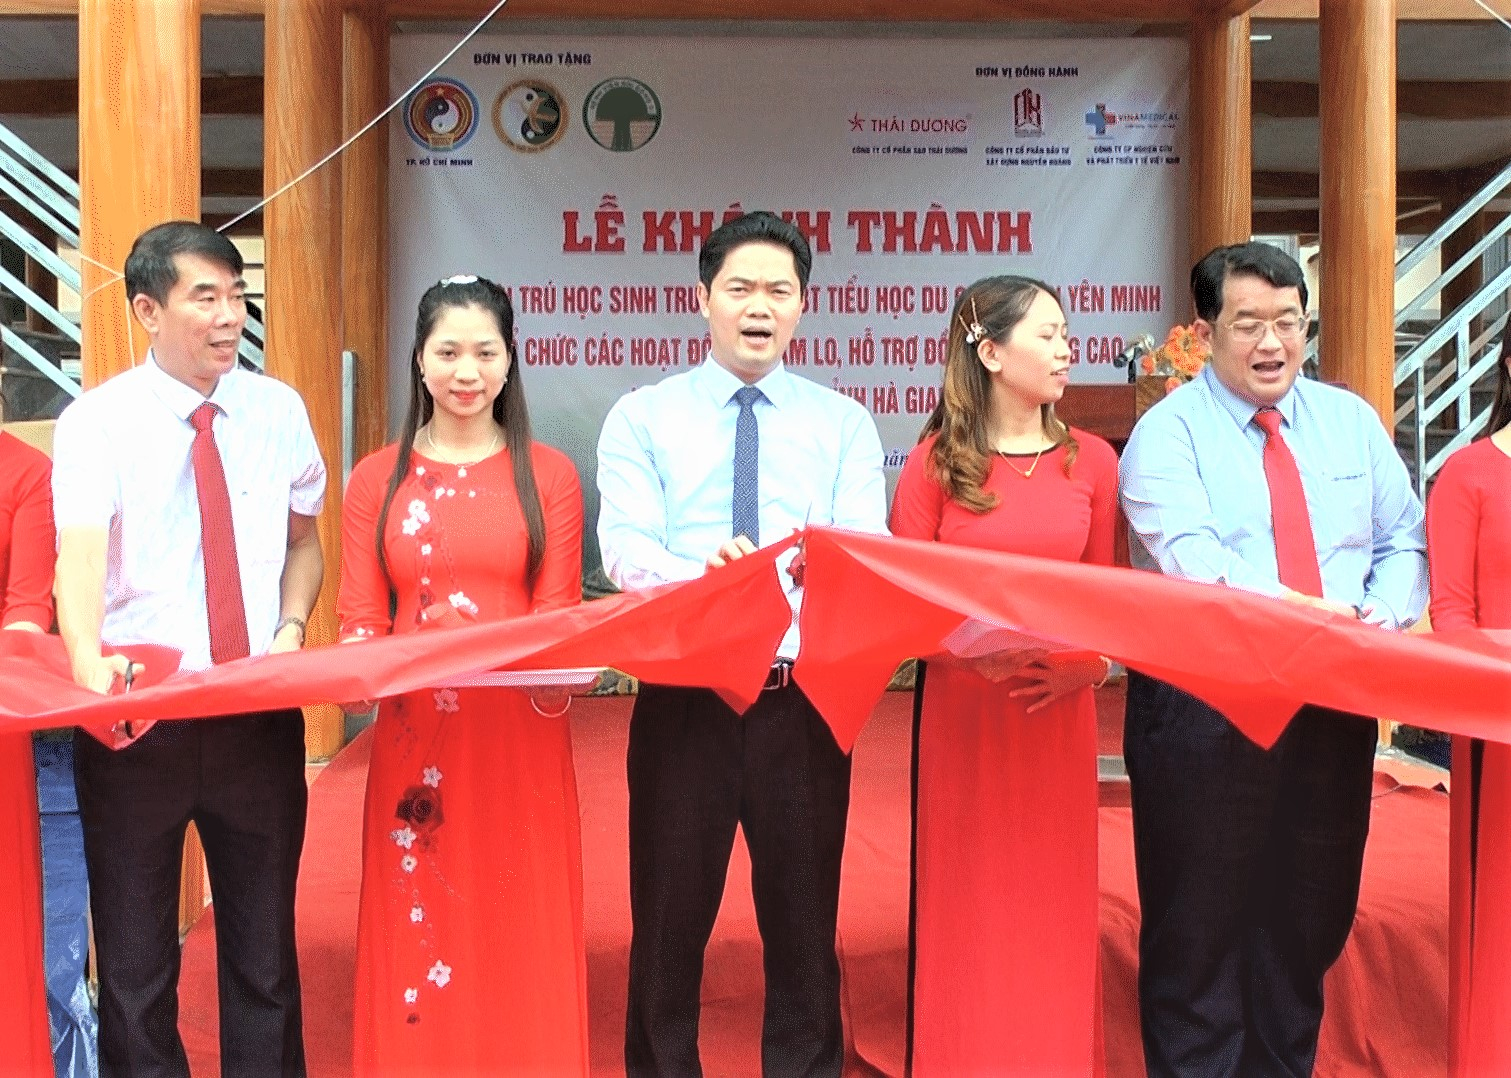 Trưởng Ban Tuyên giáo Tỉnh ủy Vũ Mạnh Hà và lãnh đạo huyện Yên Minh, đại diện các đơn vị tài trợ cắt băng khánh thành nhà lưu trú trường PTDTBT Tiểu học Du Già